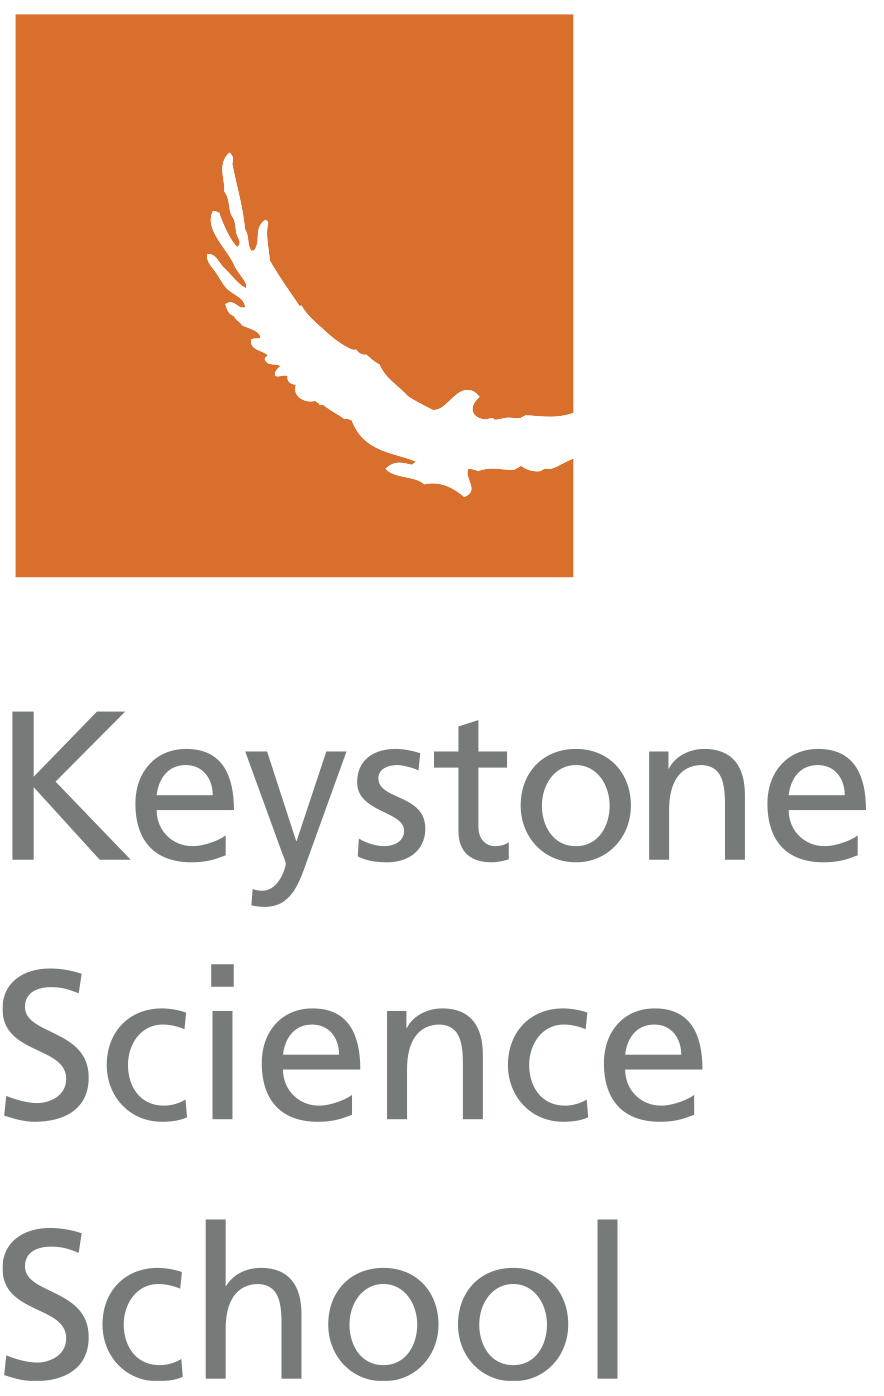 Keystone Science School